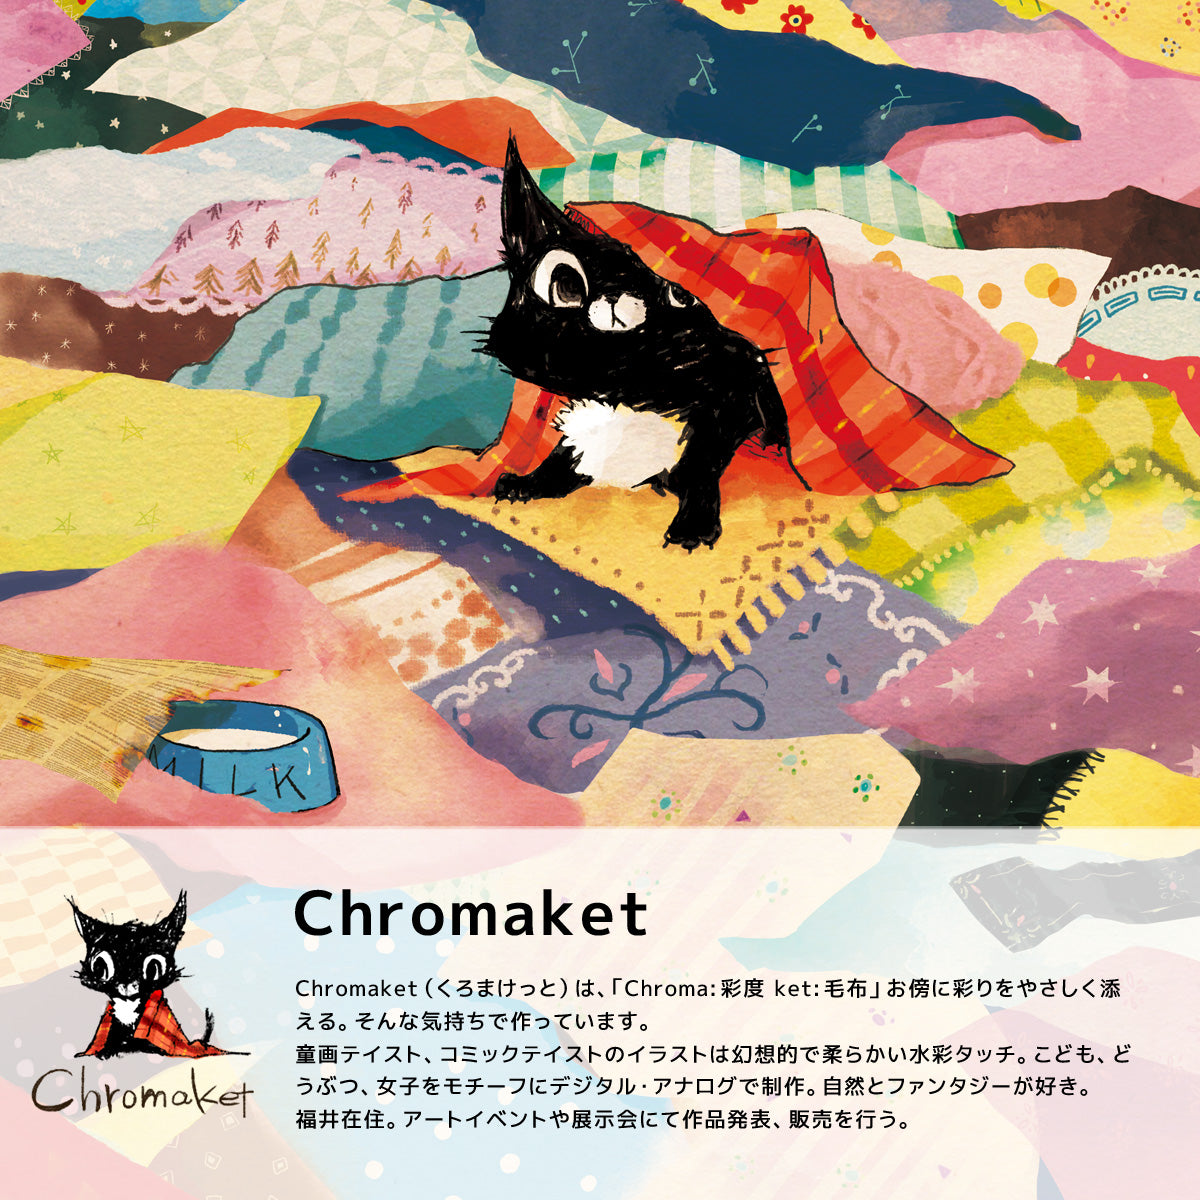 Chromaketは、あなたの傍らに彩りを優しく添えるブランドです。